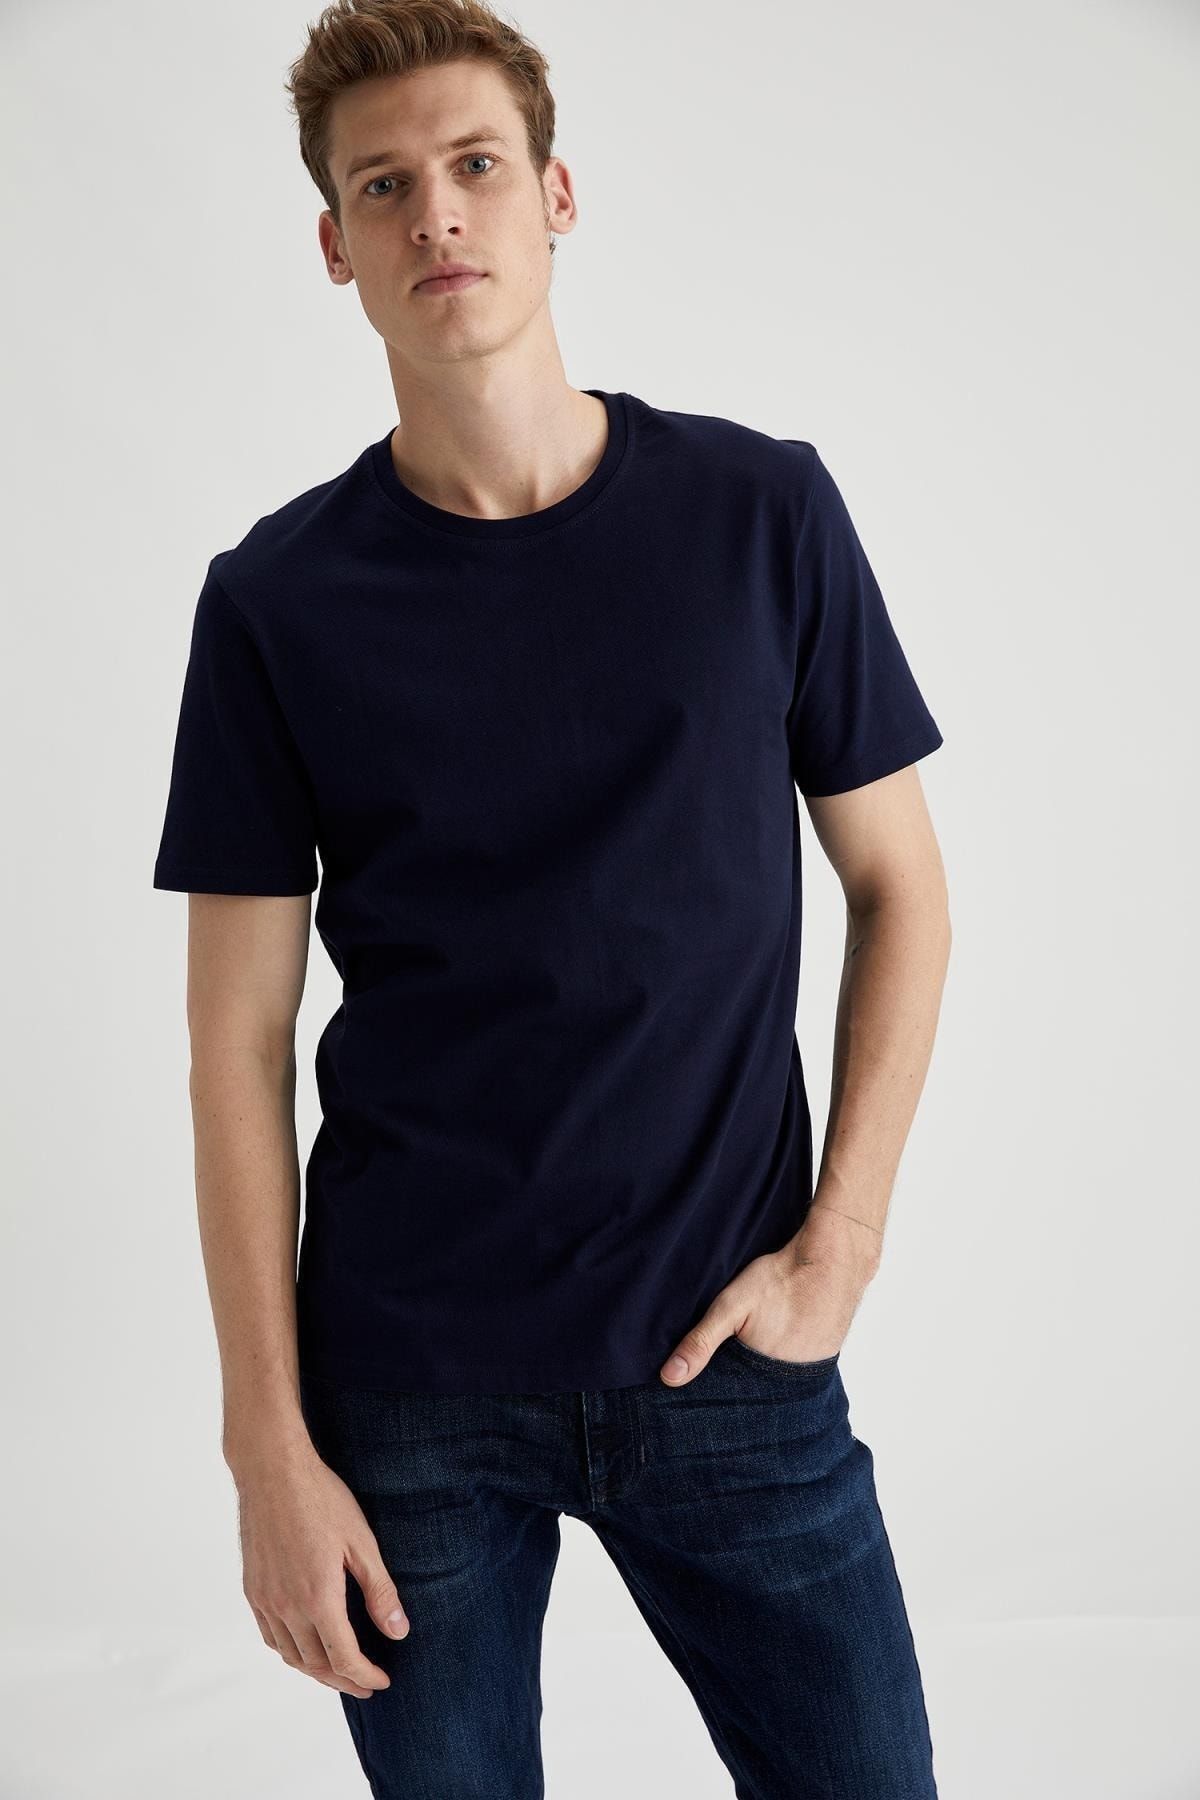 تی شرت آستین کوتاه مردانه رنگ آبی تیره از برند دفاکتو DeFacto (برند ترکیه)